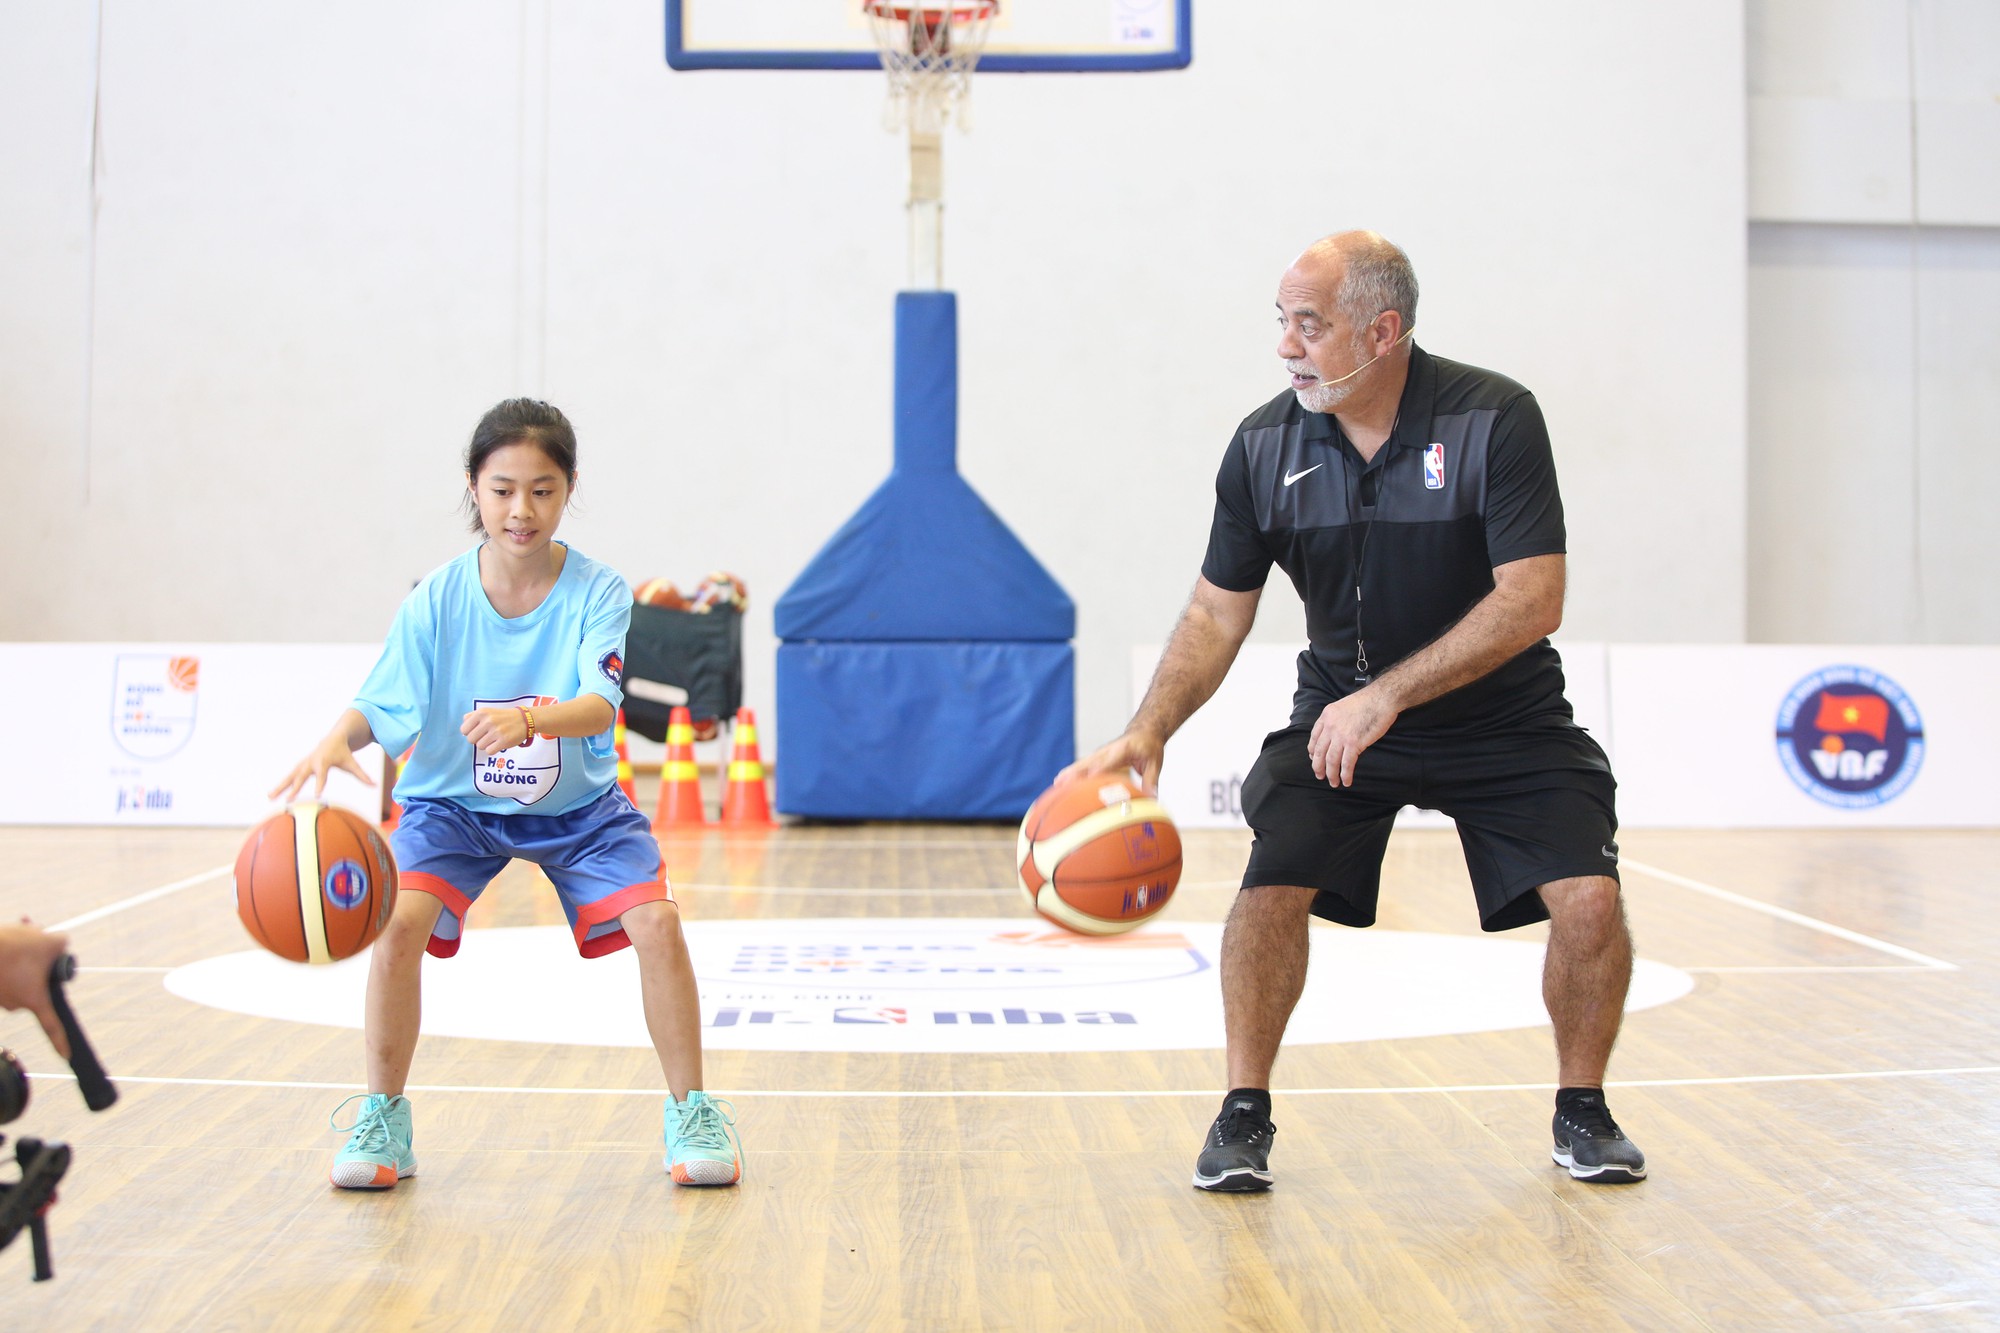 Hơn 1.000 giáo viên thể dục tham dự ngày tập huấn bóng rổ chuẩn NBA tại TP.HCM - Ảnh 2.